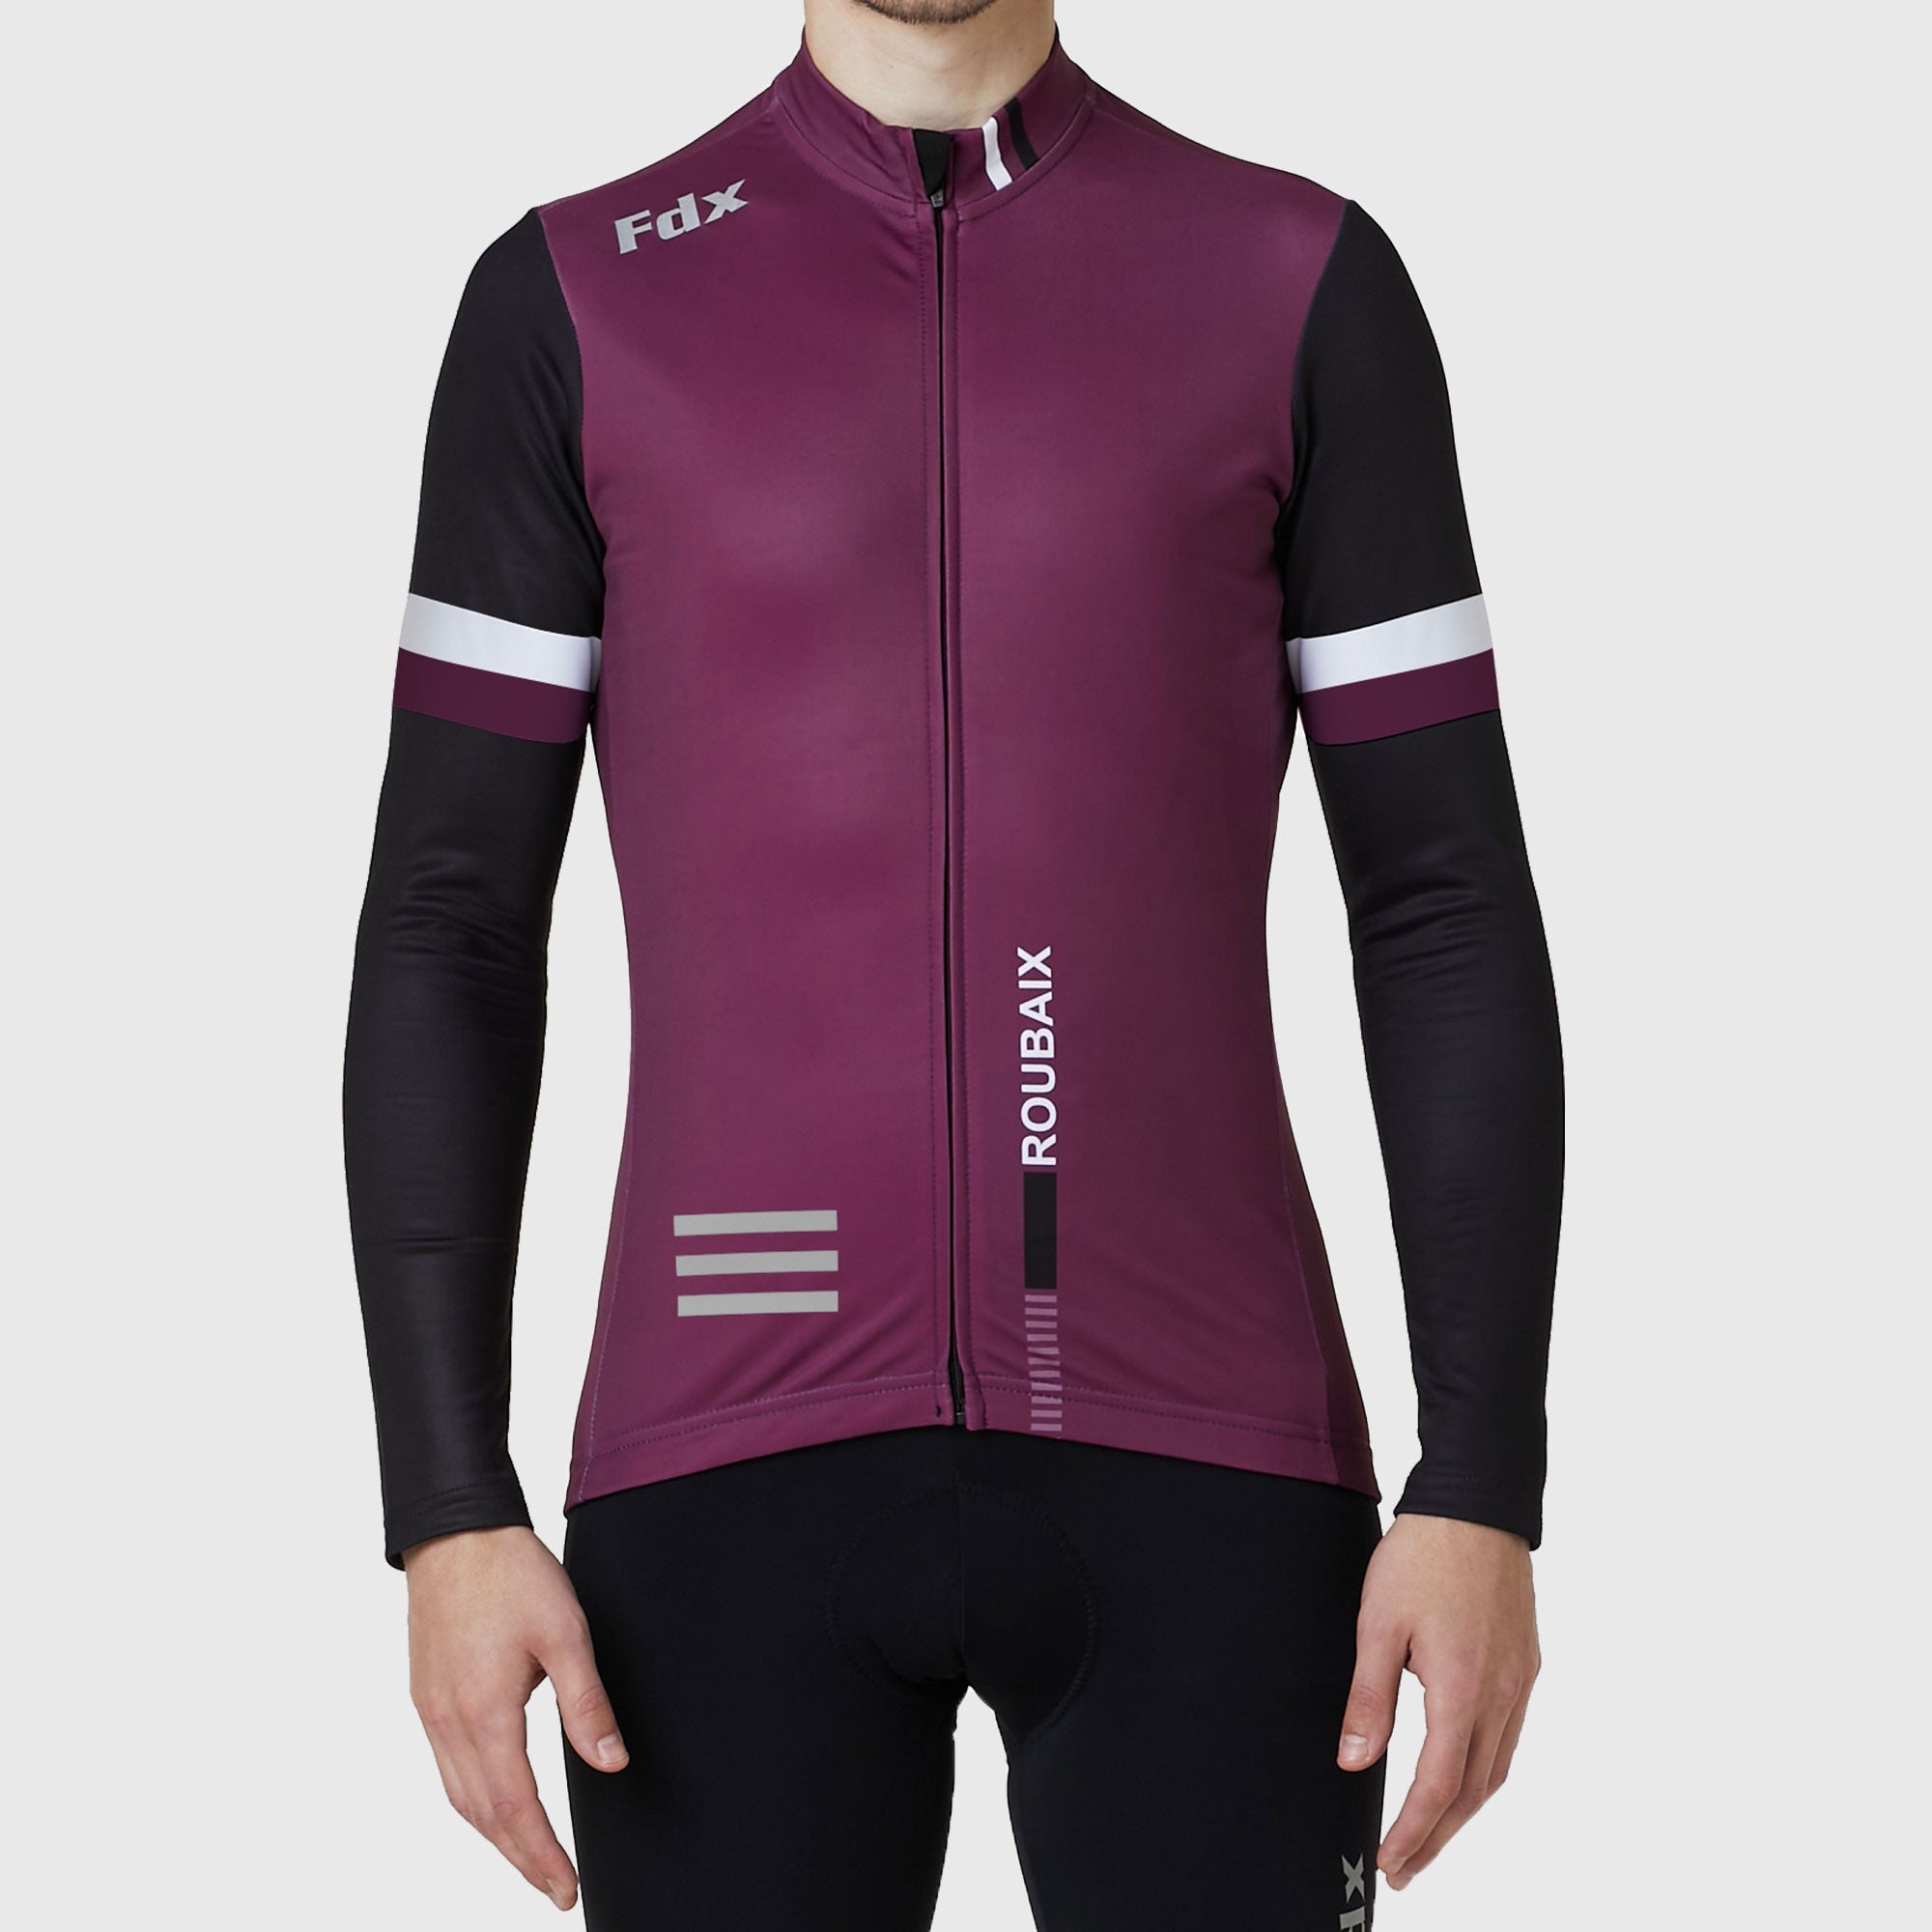 Fdx Men's Black & Purple Long Sleeve Cycling Jersey for Winter Roubaix Thermal Fleece Road Bike Wear Top Full Zipper, Pockets & Hi viz Reflectors - Limited Edition